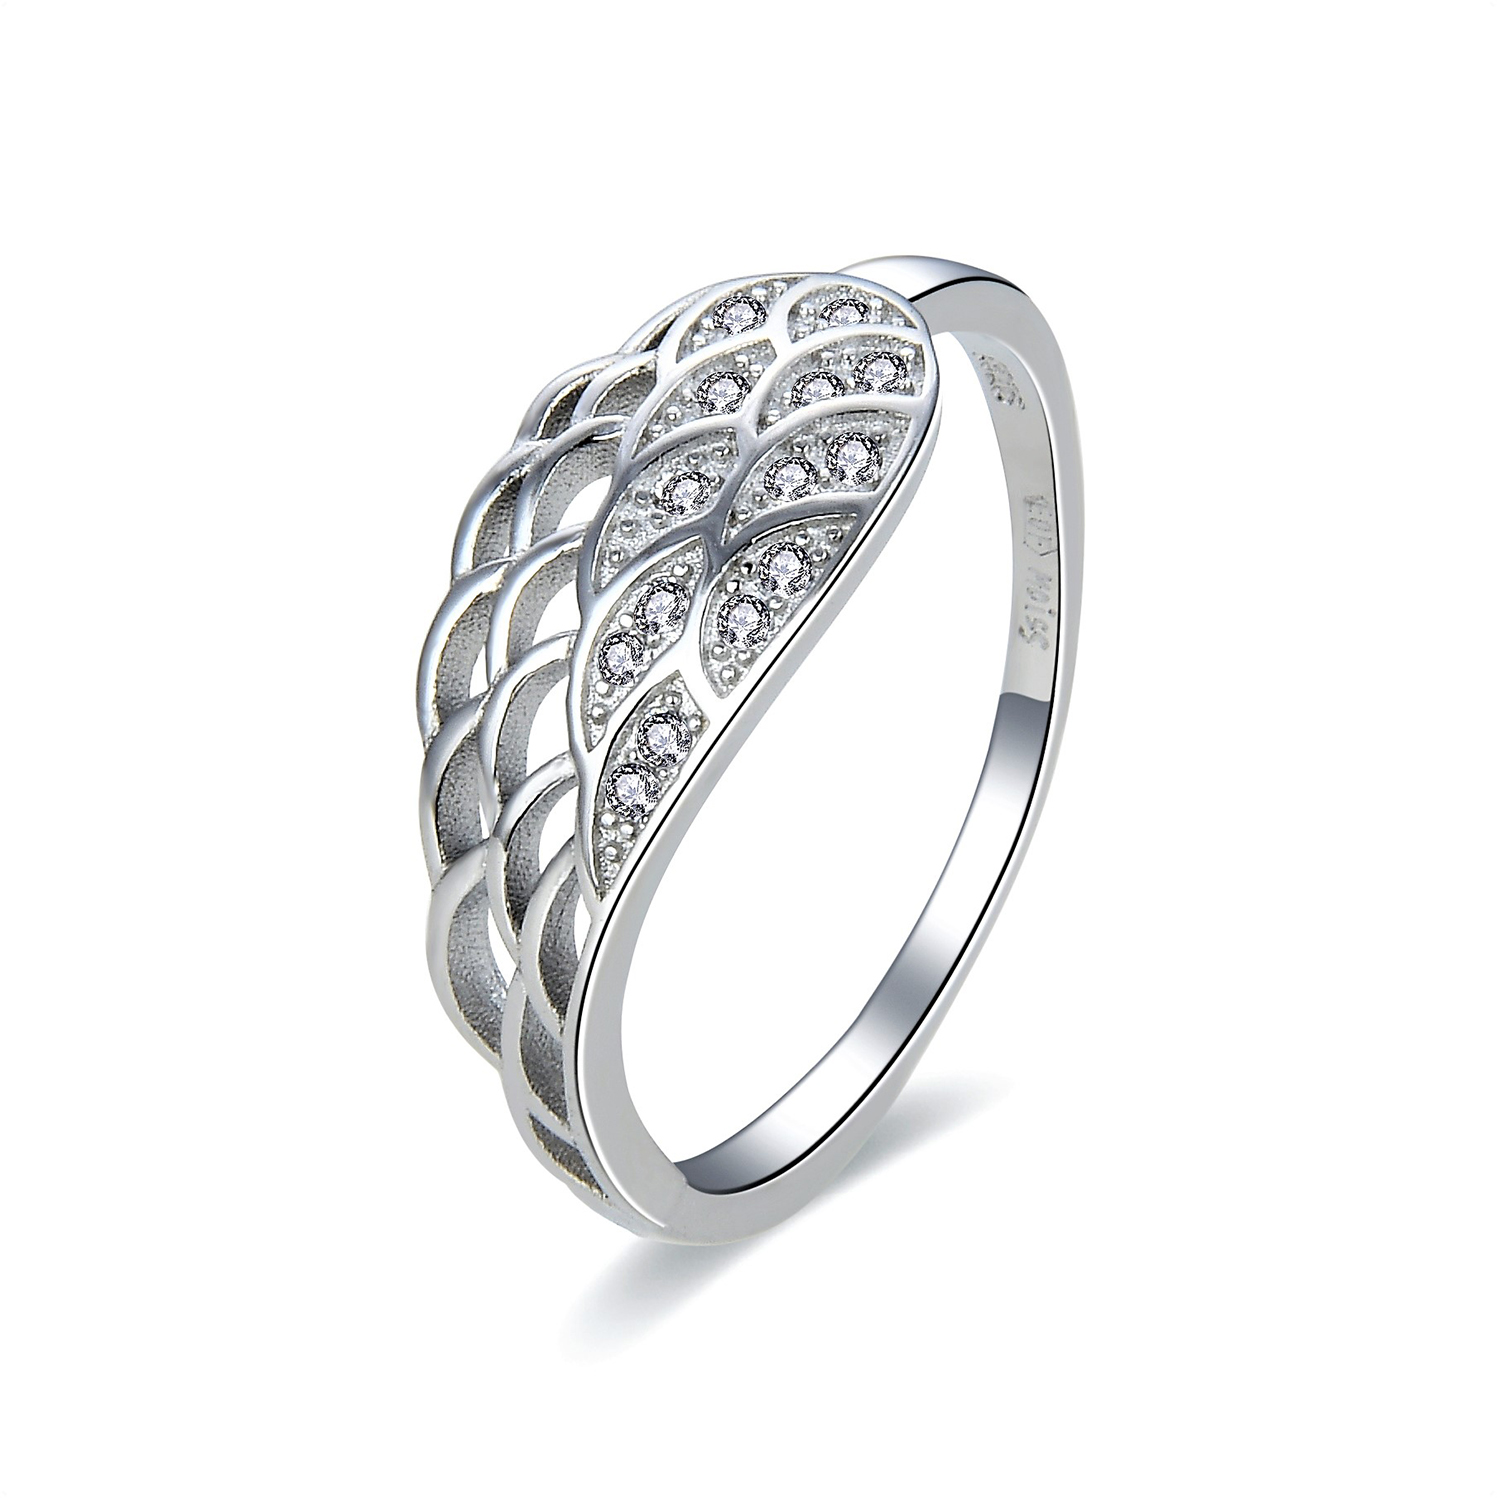 MOISS Moiss stříbrný prsten ANDĚLSKÉ KŘÍDLO R0002757 Velikost 52 mm R0002757